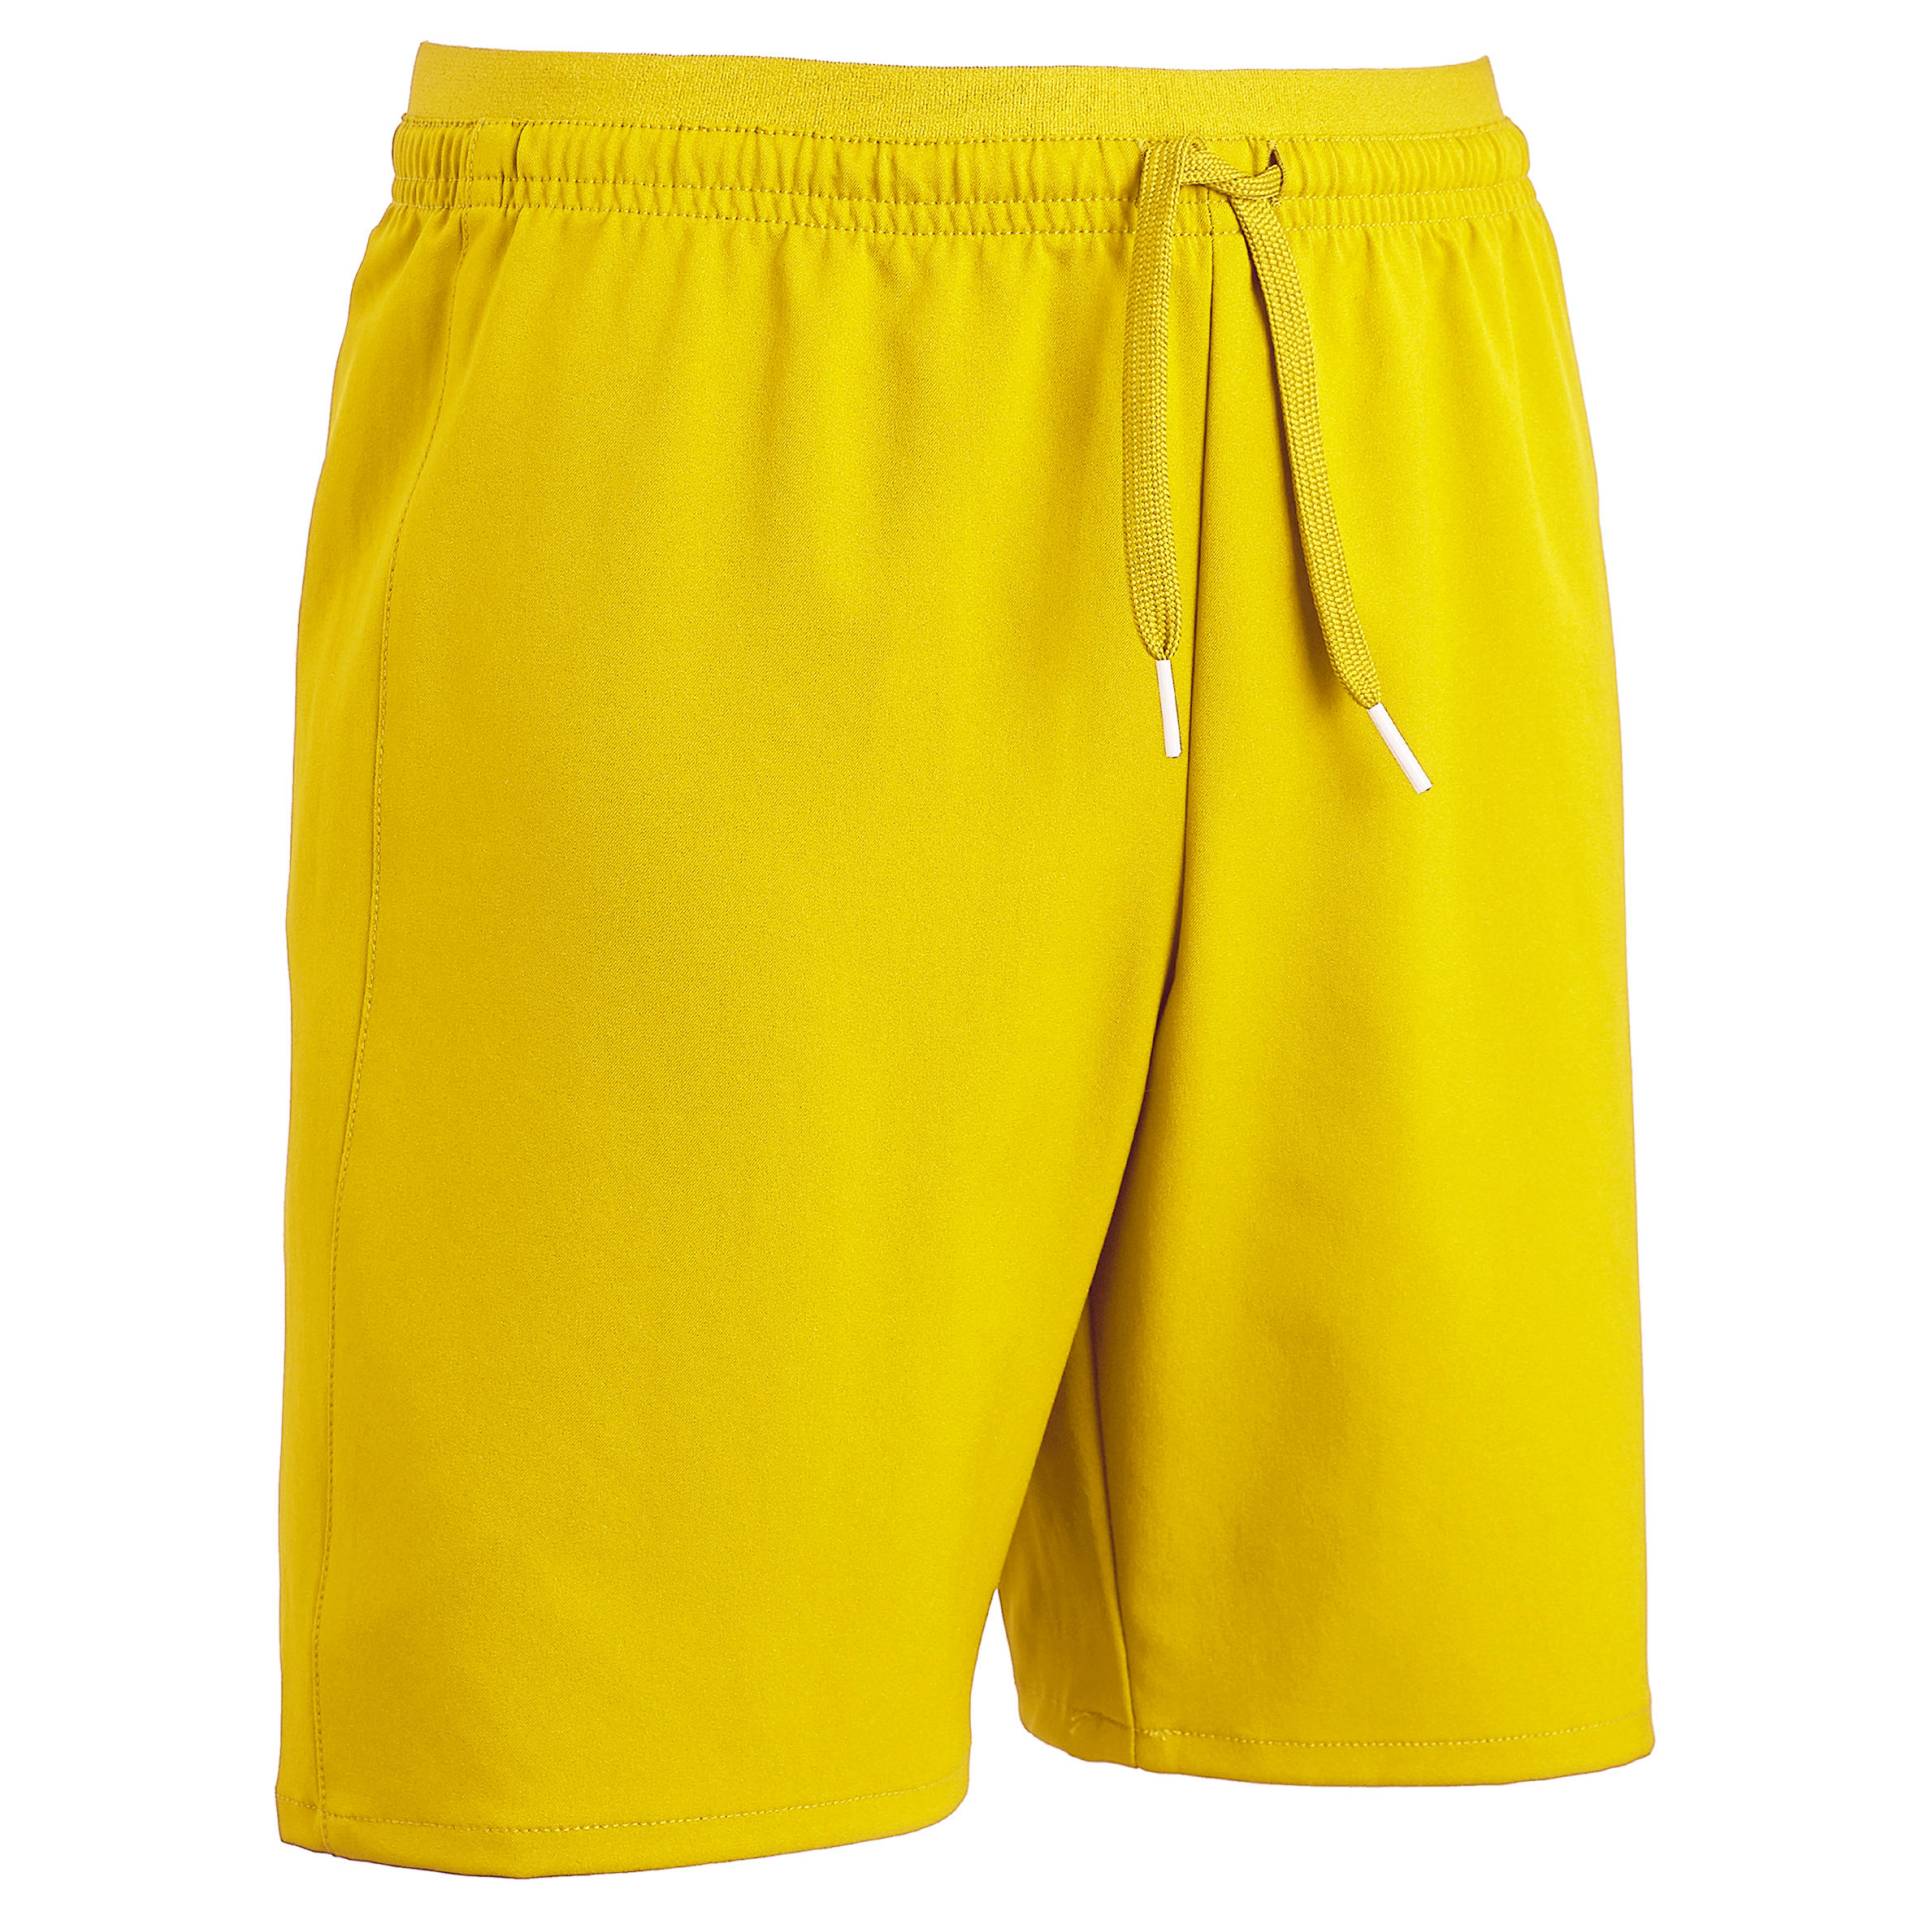 Kinder Fussball Shorts VIRALTO gelb von KIPSTA